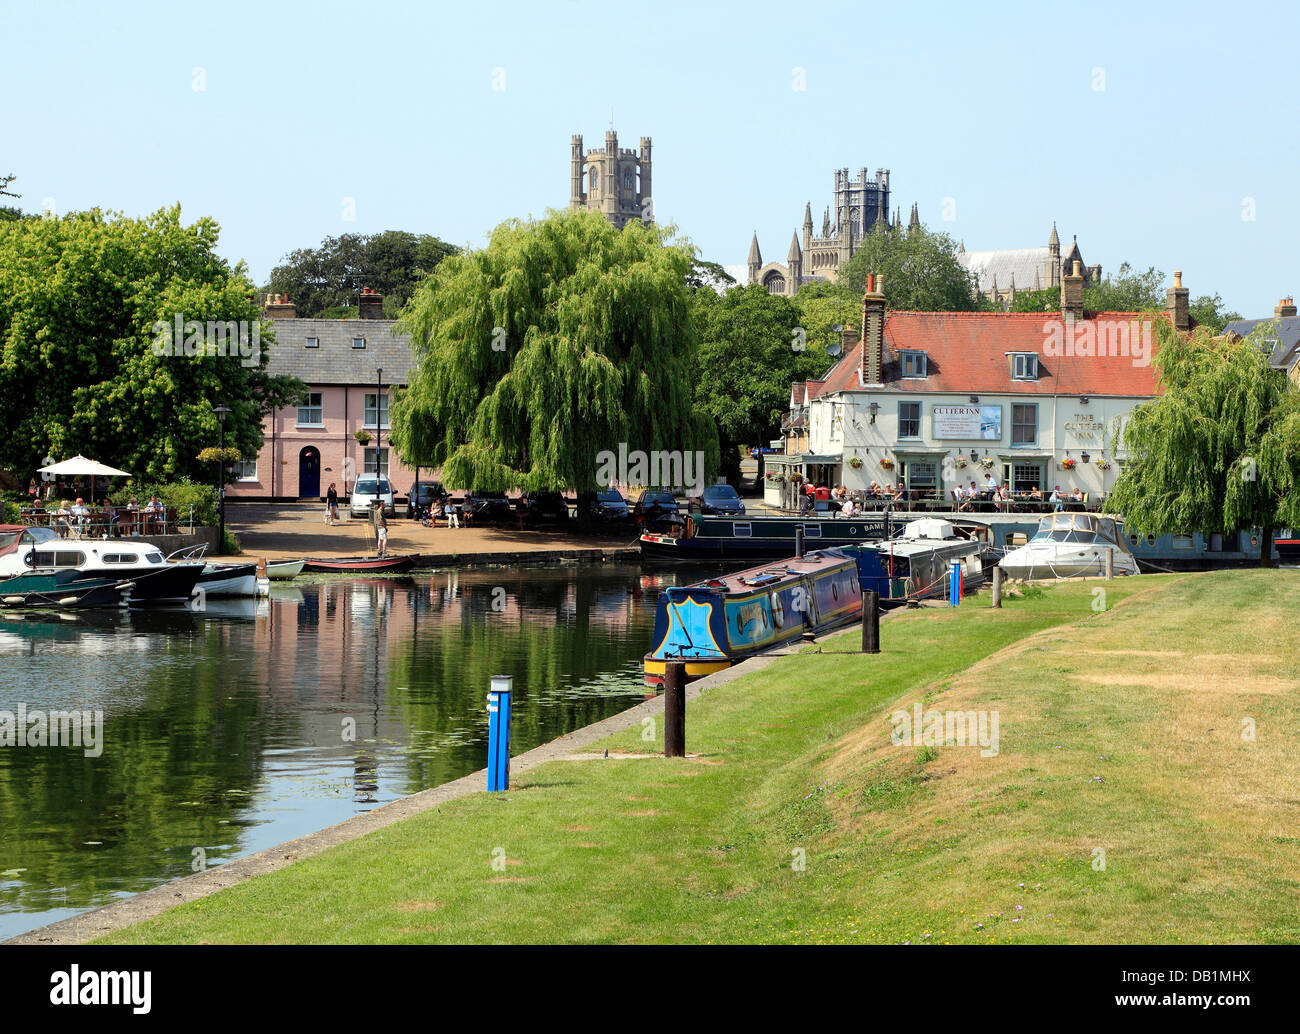 Ely Cathedral, Fluss Ouse und Cutter Inn, Kähne und Boote, englische Flüsse am Flussufer Kneipen Gaststätten Pub, Cambridgeshire England UK Stockfoto